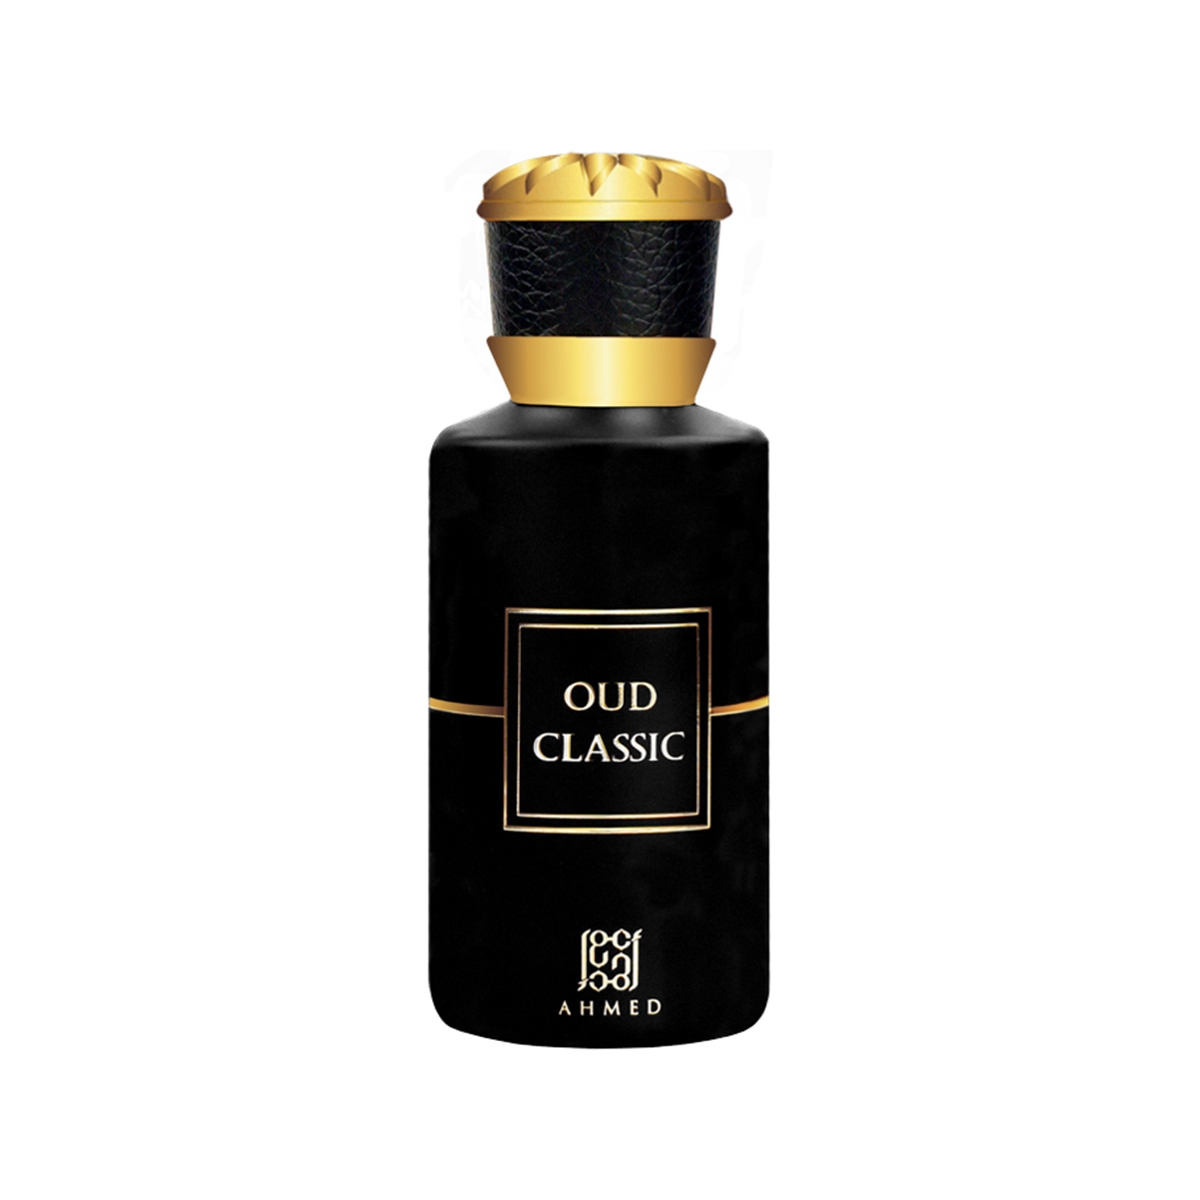 Oud Classic Ahmed al Maghribi Perfumes Perfumes, Profumi Unisex, Arada Perfumes